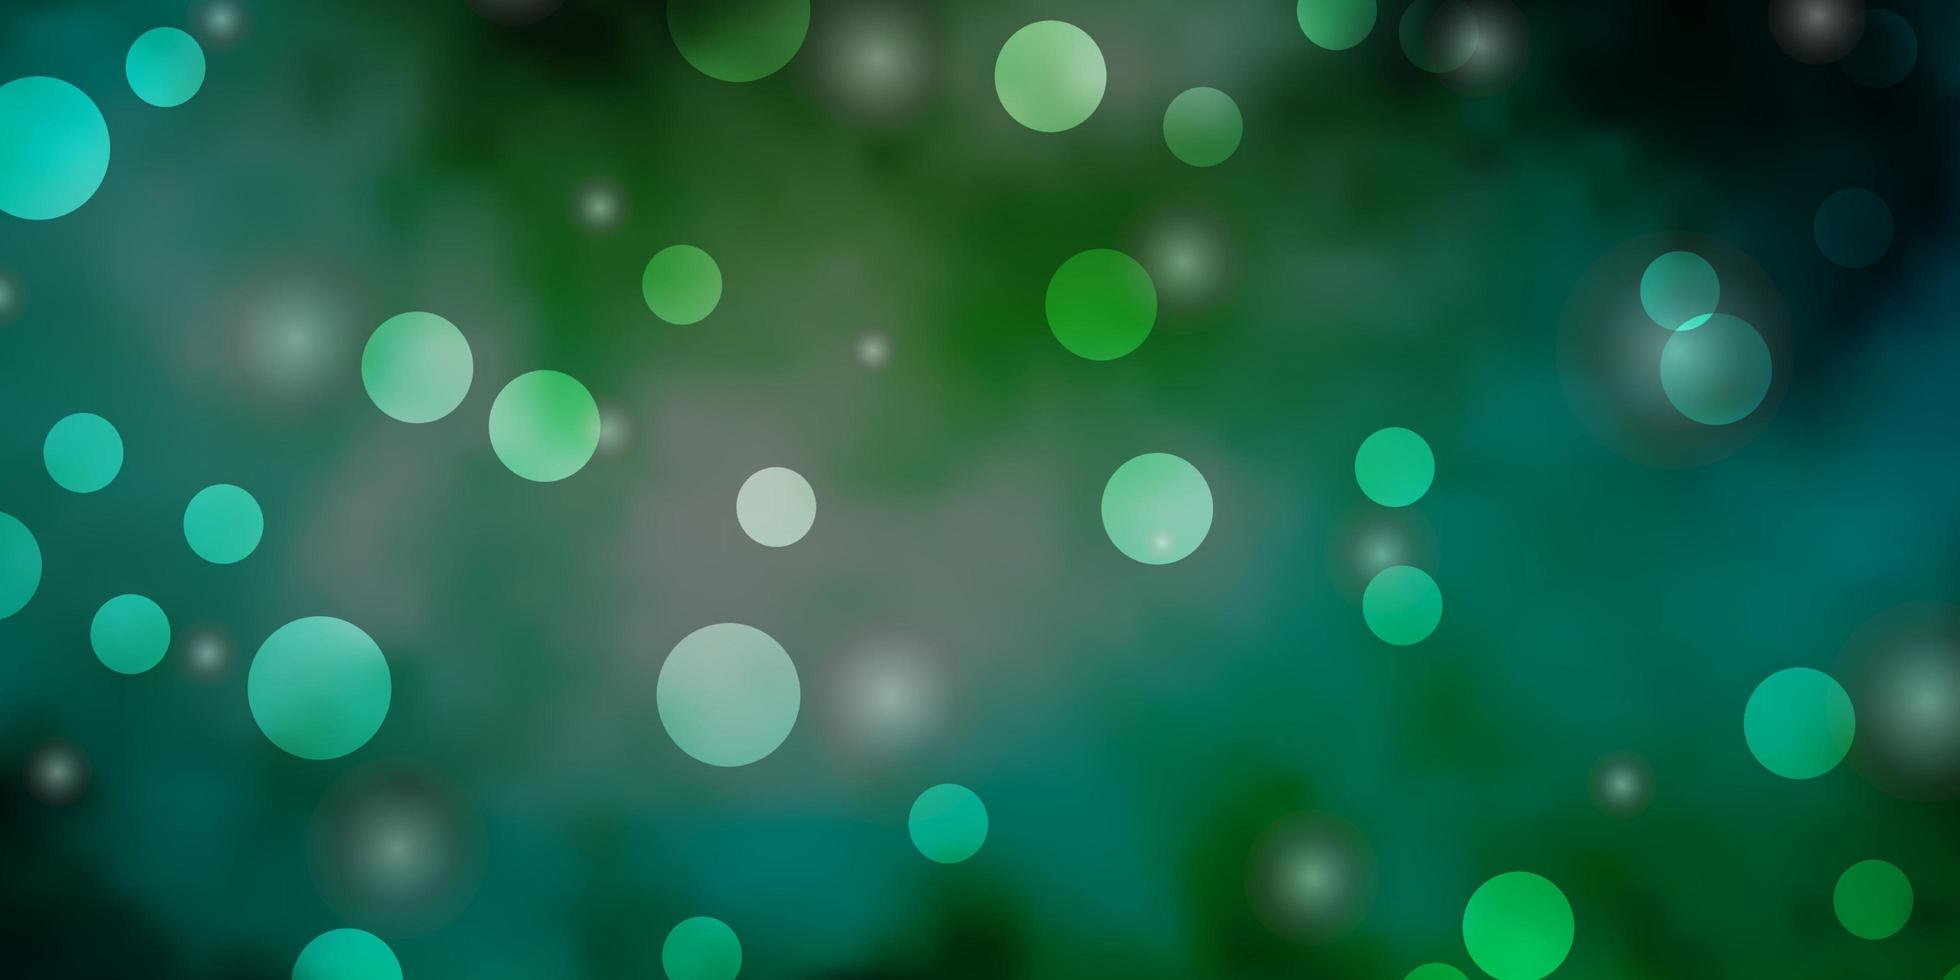 ljusblå grön vektormall med cirklar stjärnor vektor